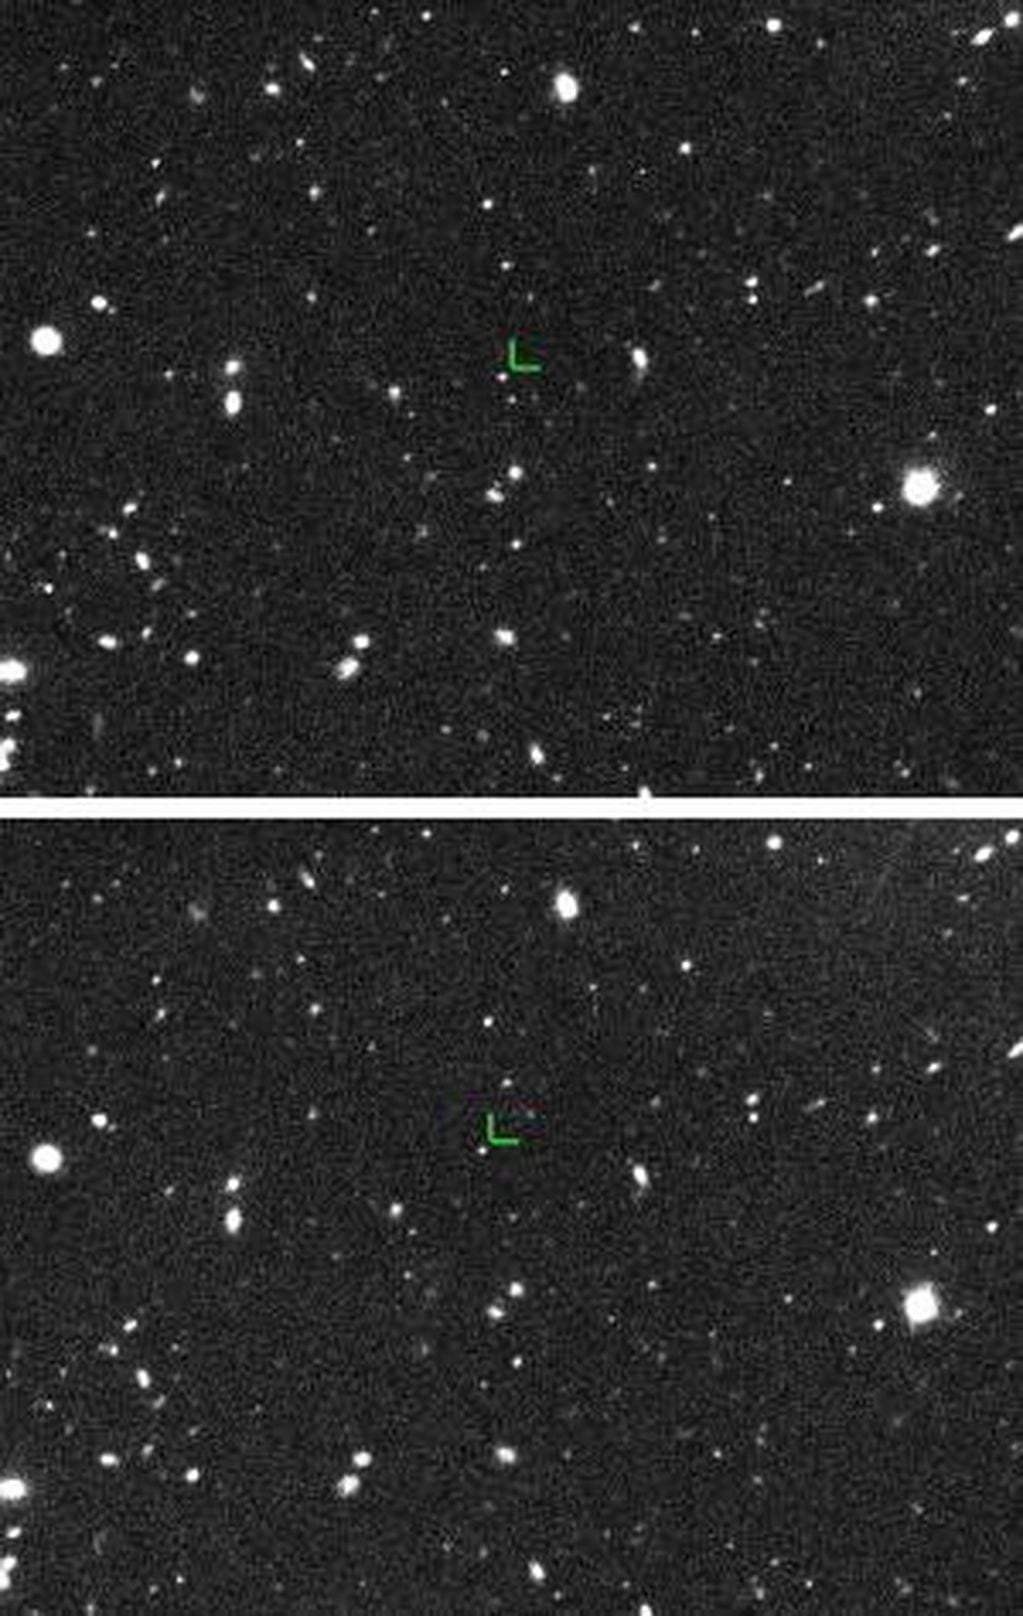 El Duende fue detectado por primera vez el 13 de octubre de 2015 desde un telescopio situado sobre el volcán hawaiano Mauna Kea. Las imágenes tienen 3 horas de diferencia y muestran al planeta enano en distintas posiciones. Crédito: Scott Sheppard.